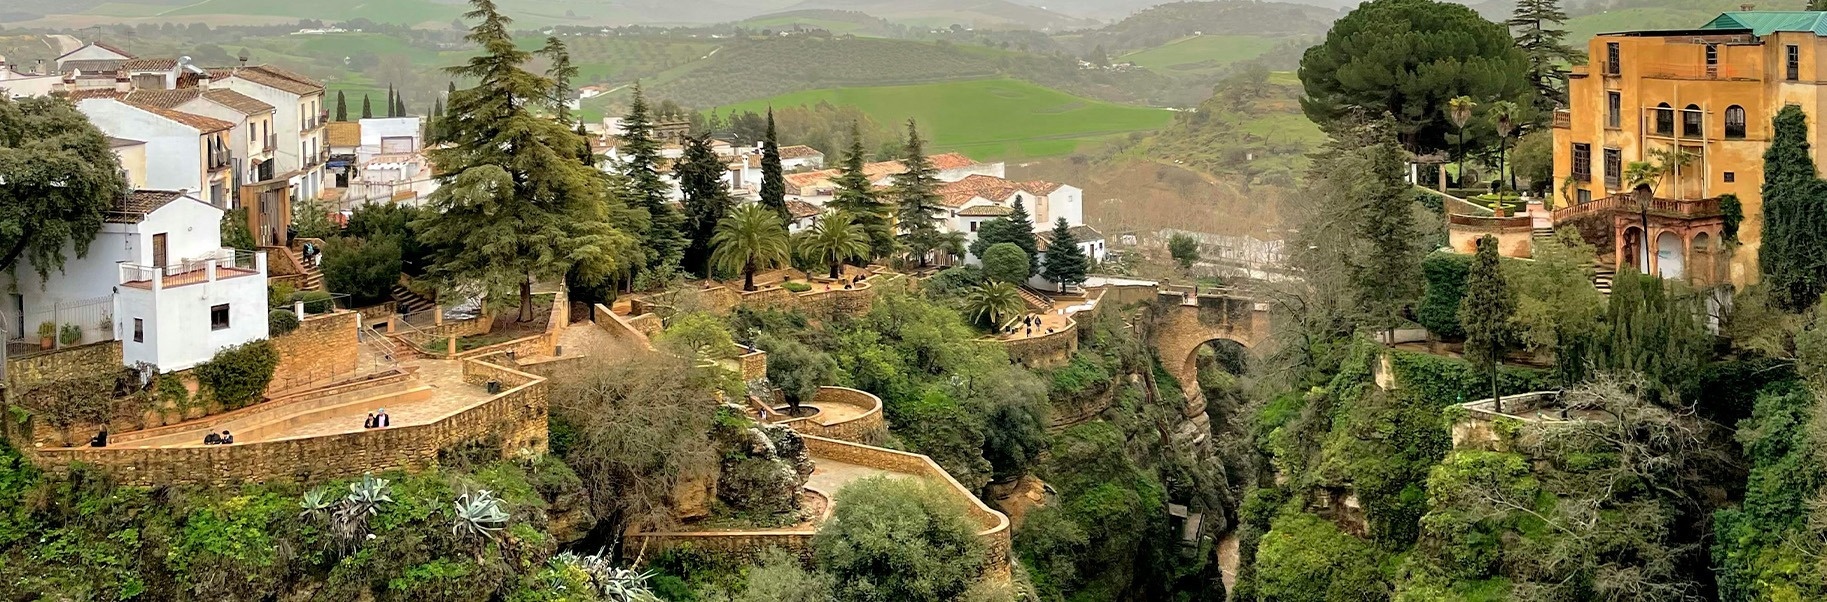 un pueblo en la ladera de una colina rodeado de árboles y edificios